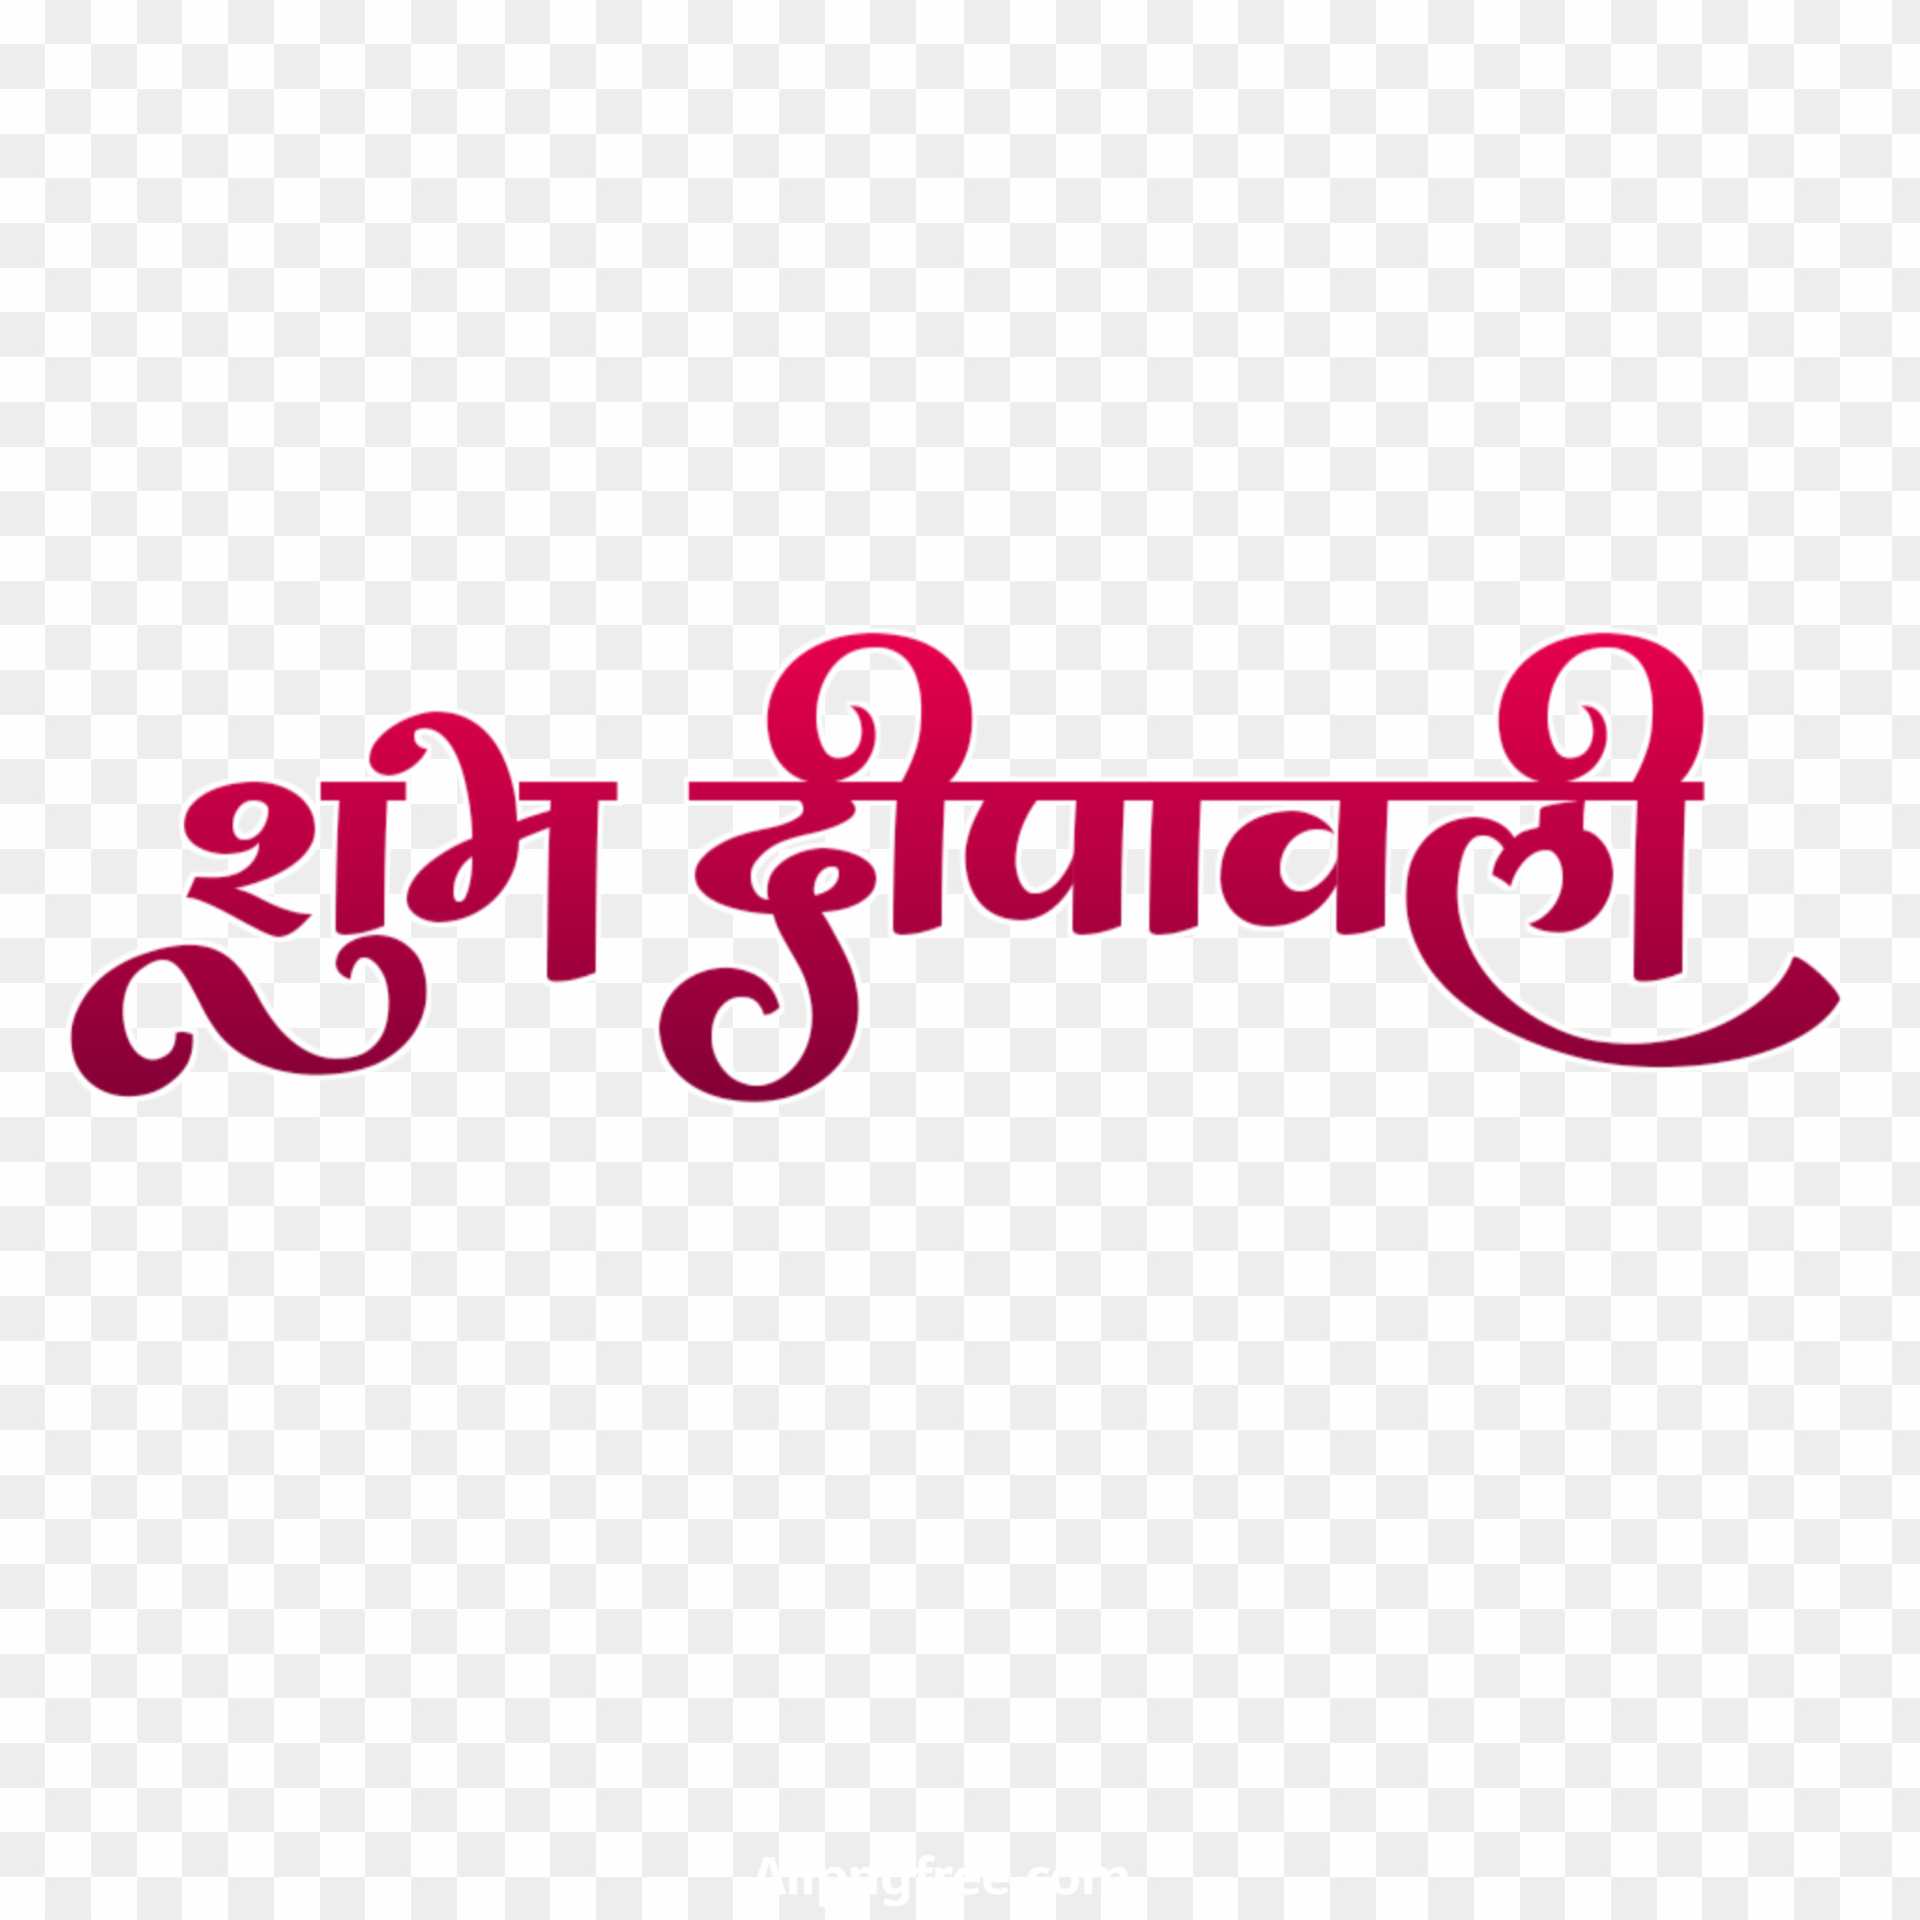 Shubh Dipawali Hindi text PNG transparent images